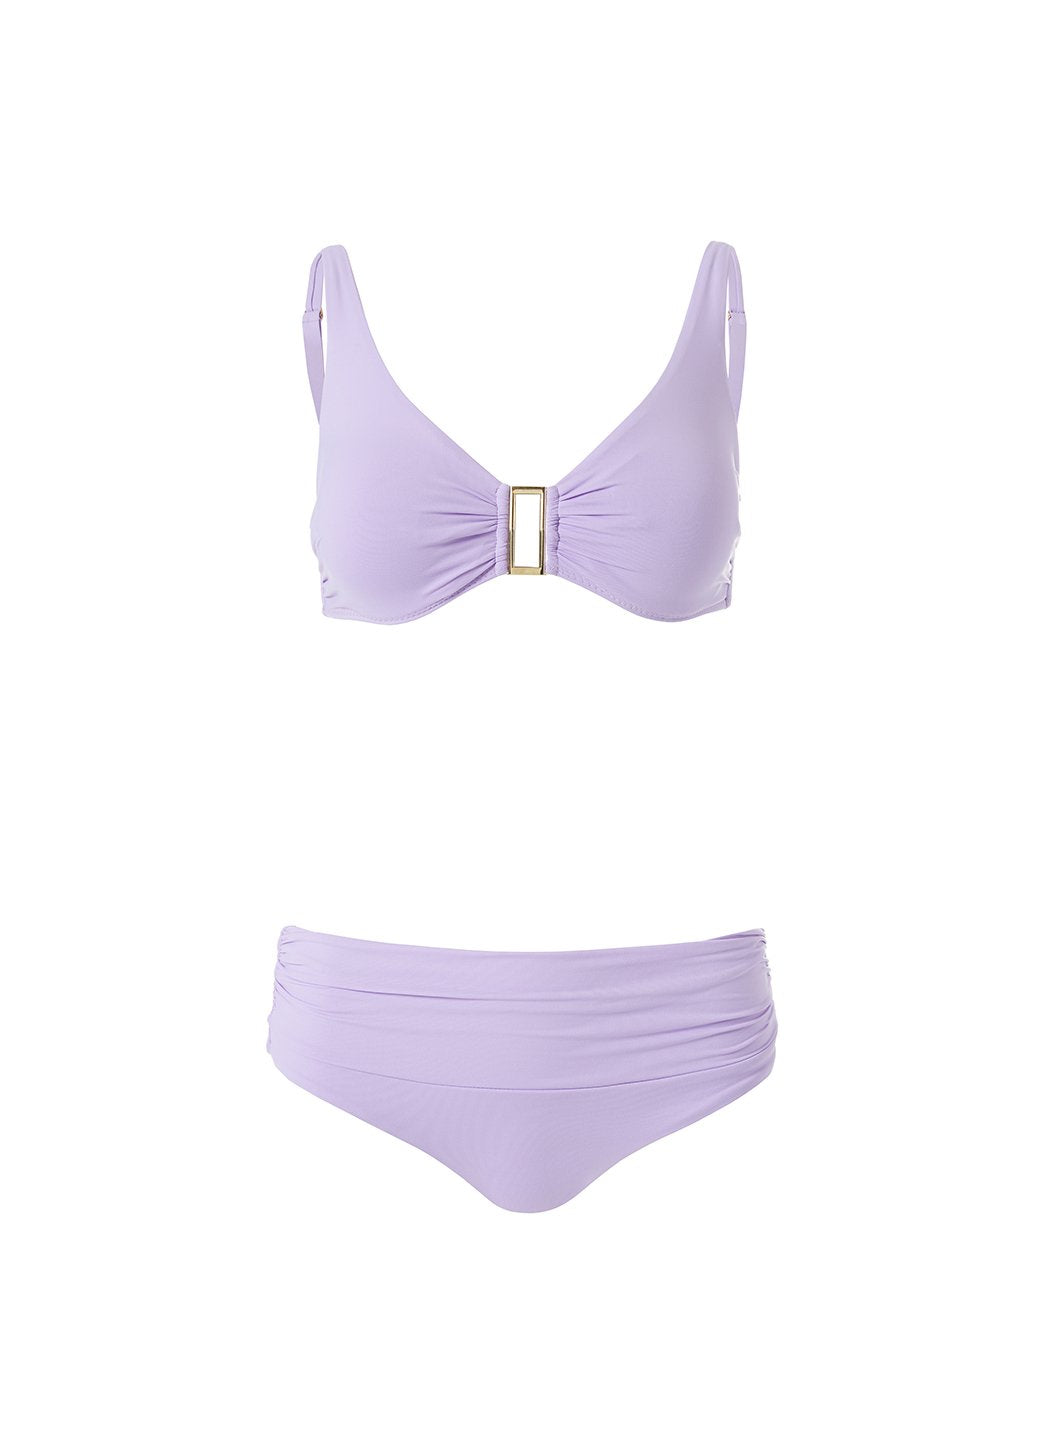 Bel Air Lilac Bikini Top